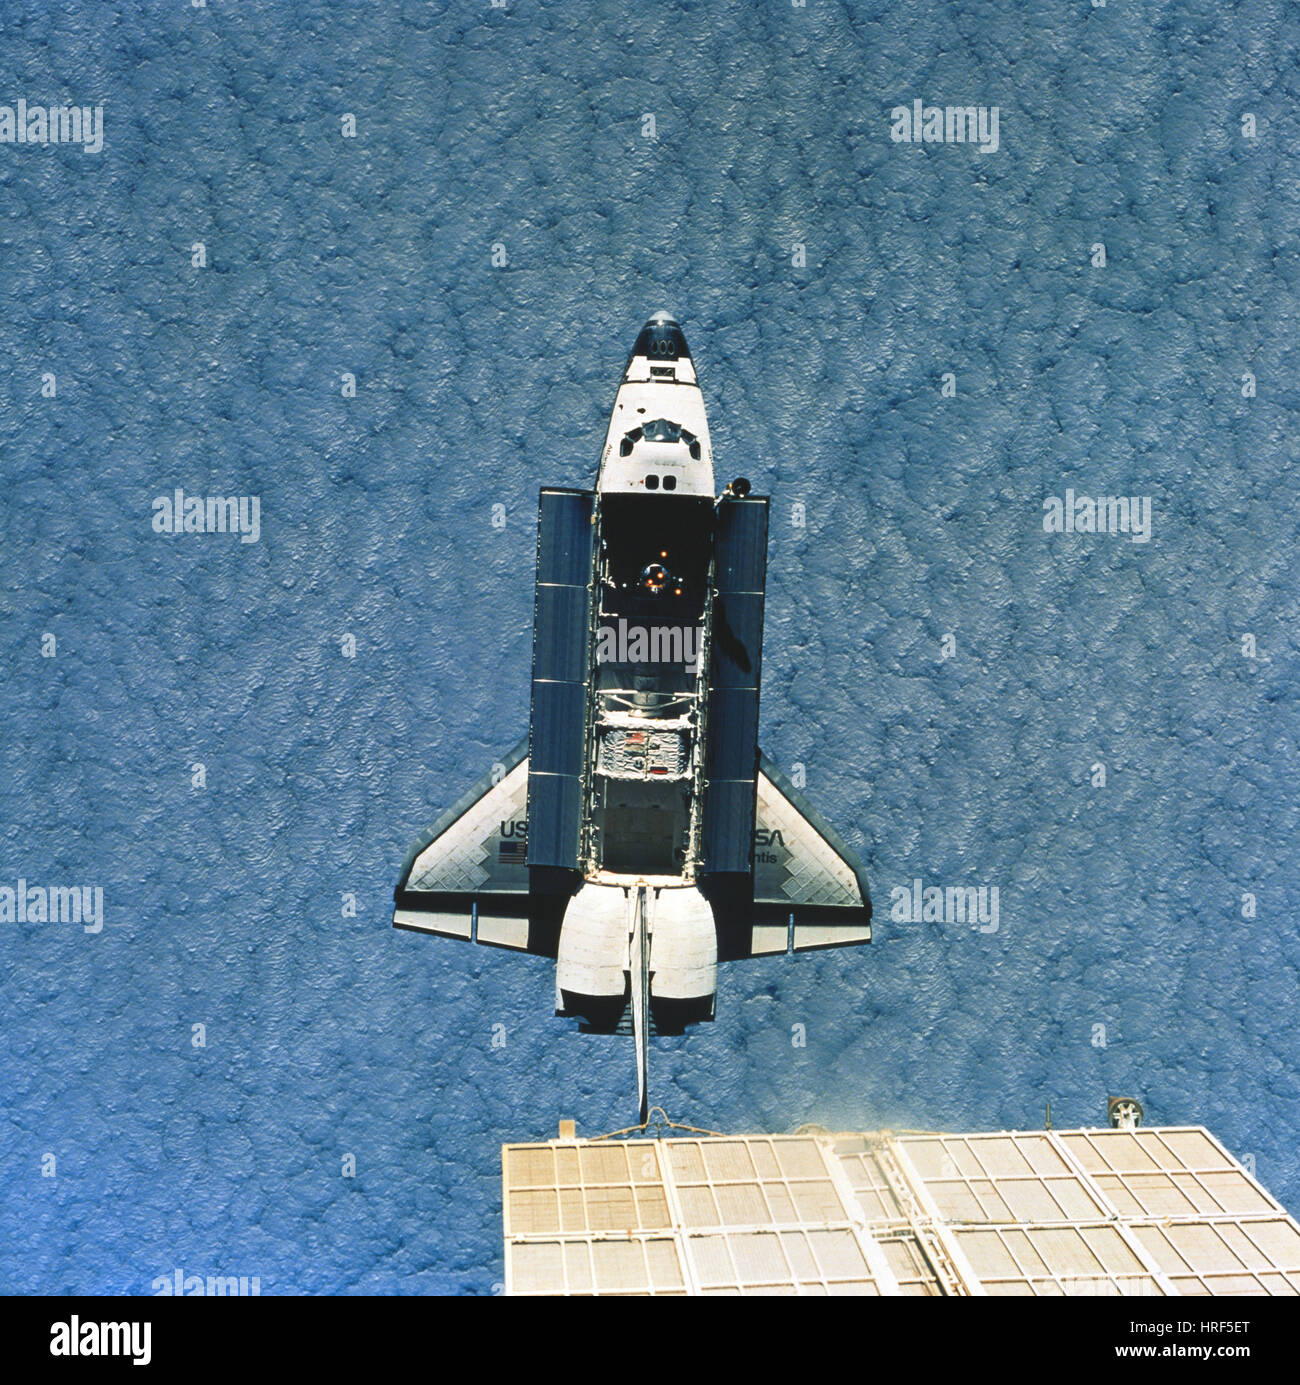 STS-76, la navette spatiale Atlantis, 1996 Banque D'Images